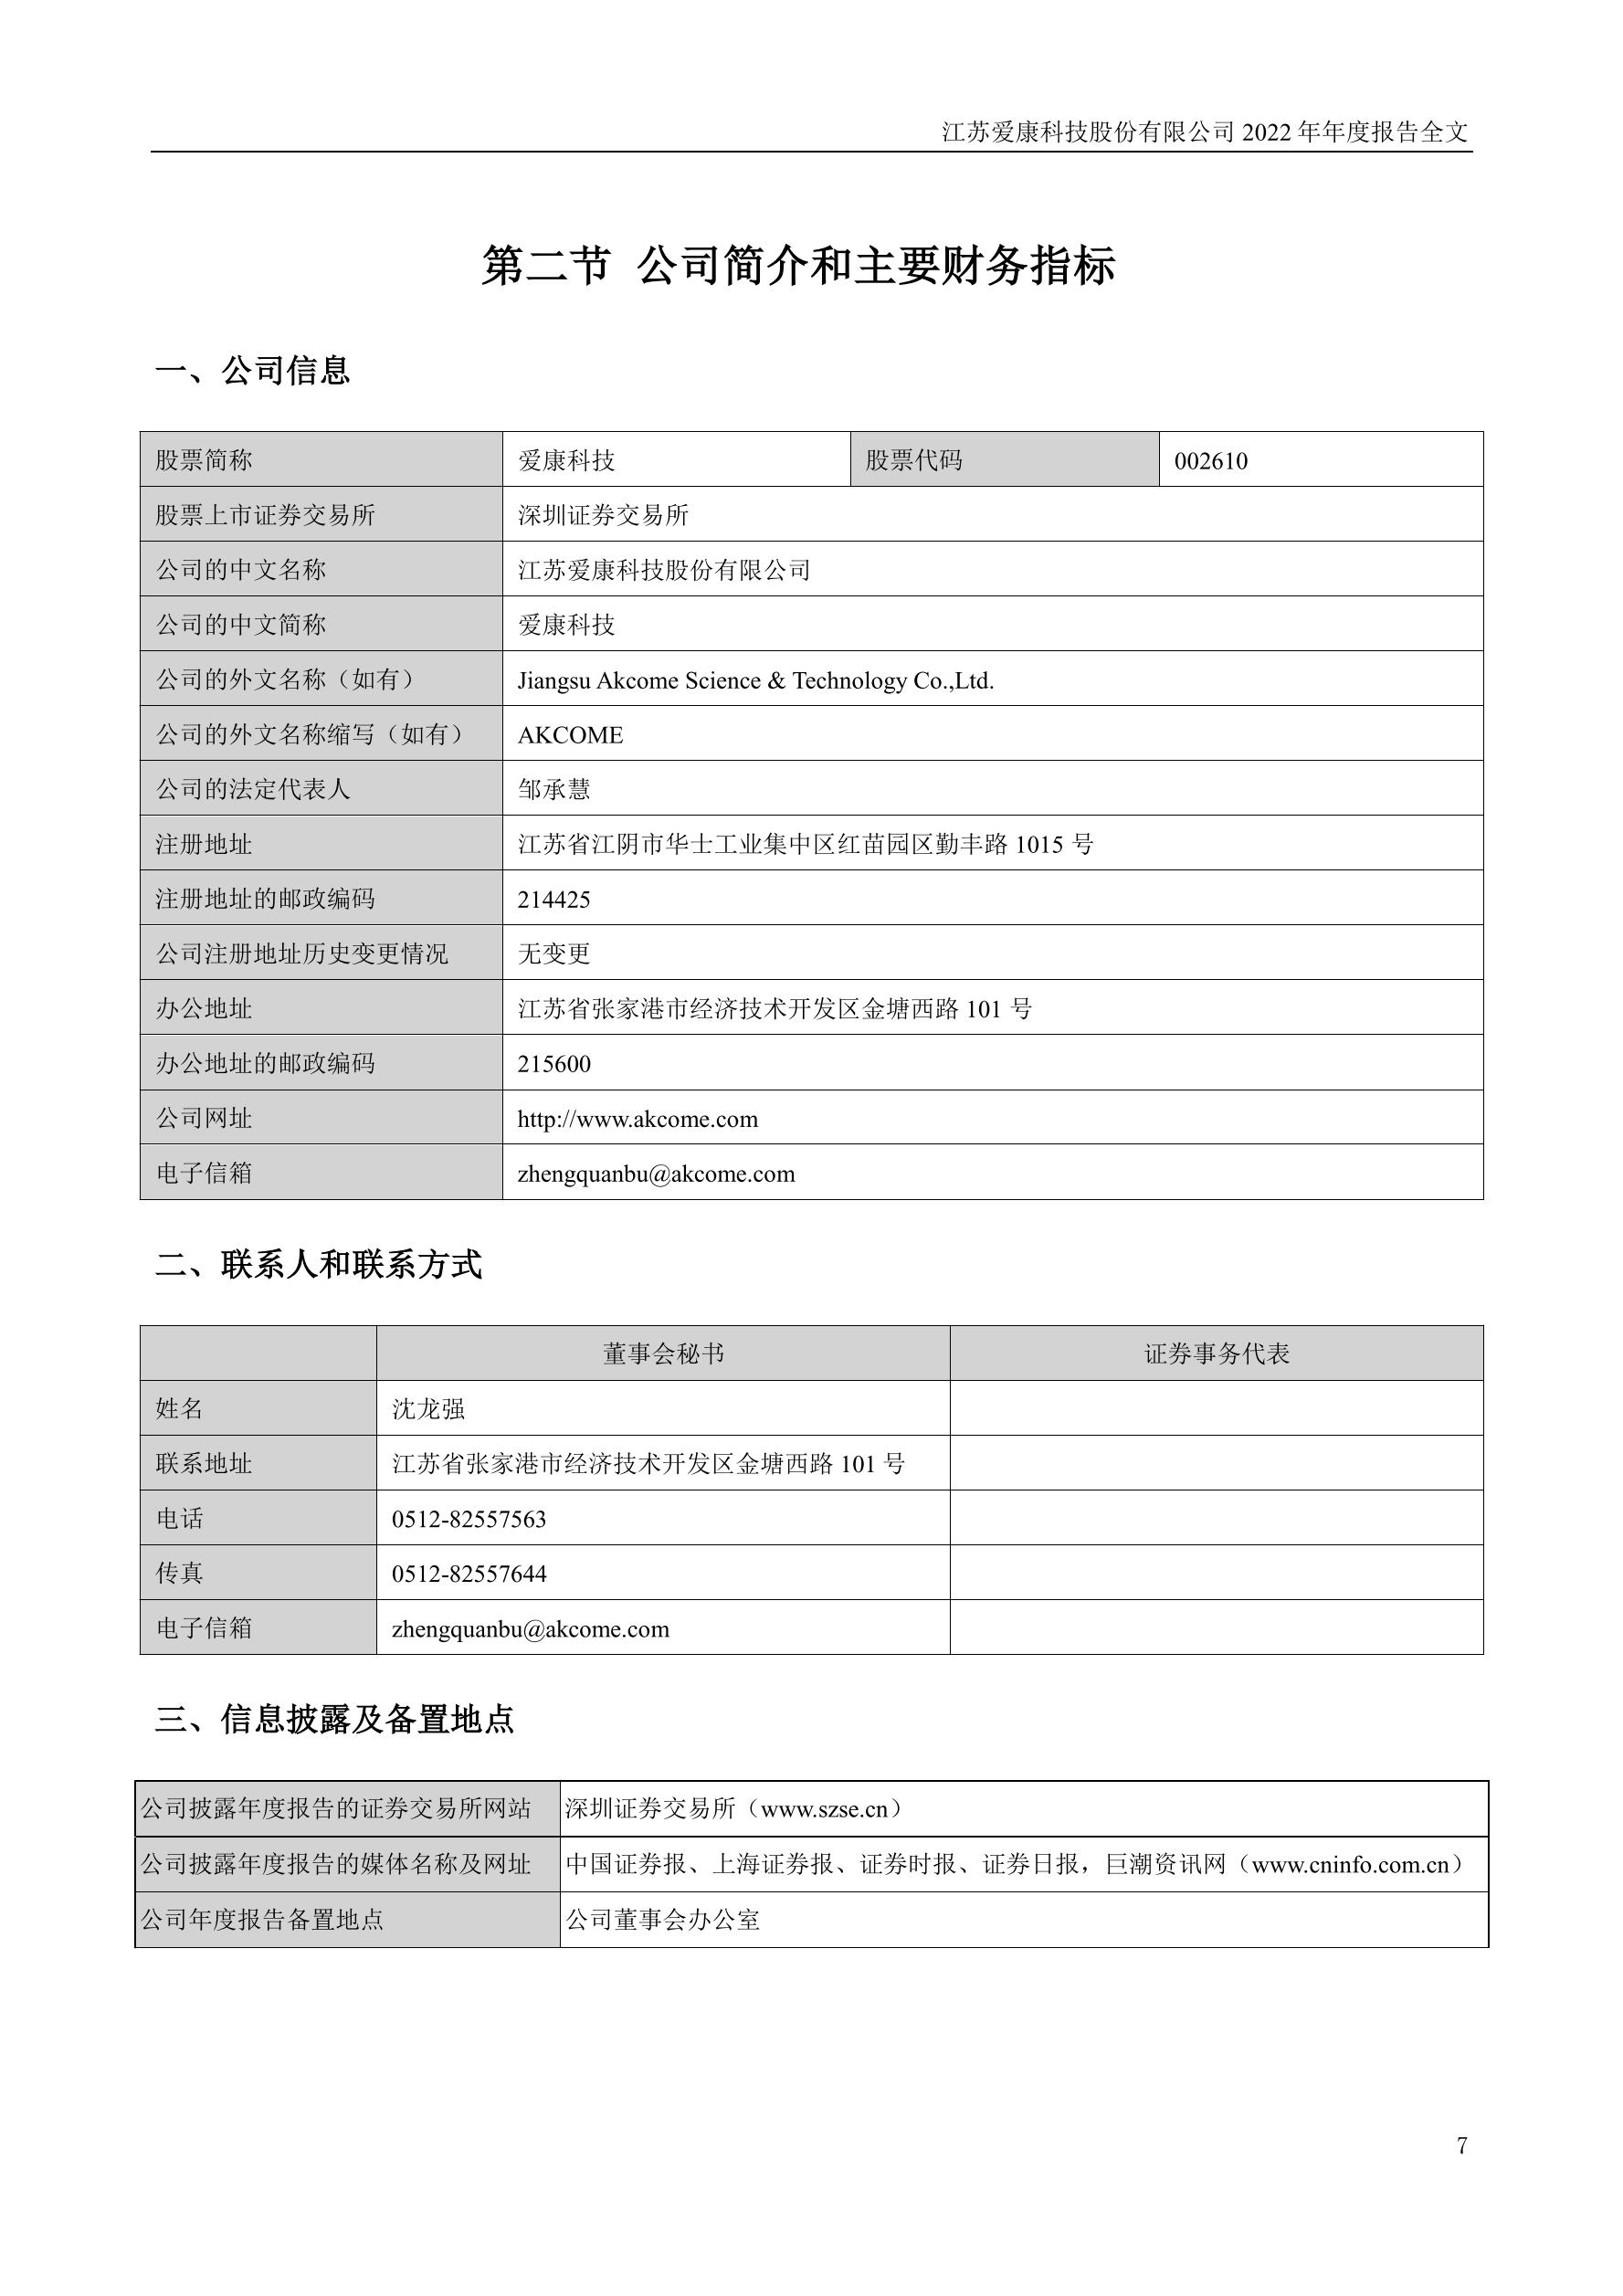 002610-爱康科技-2022年年度报告.PDF_报告-报告厅